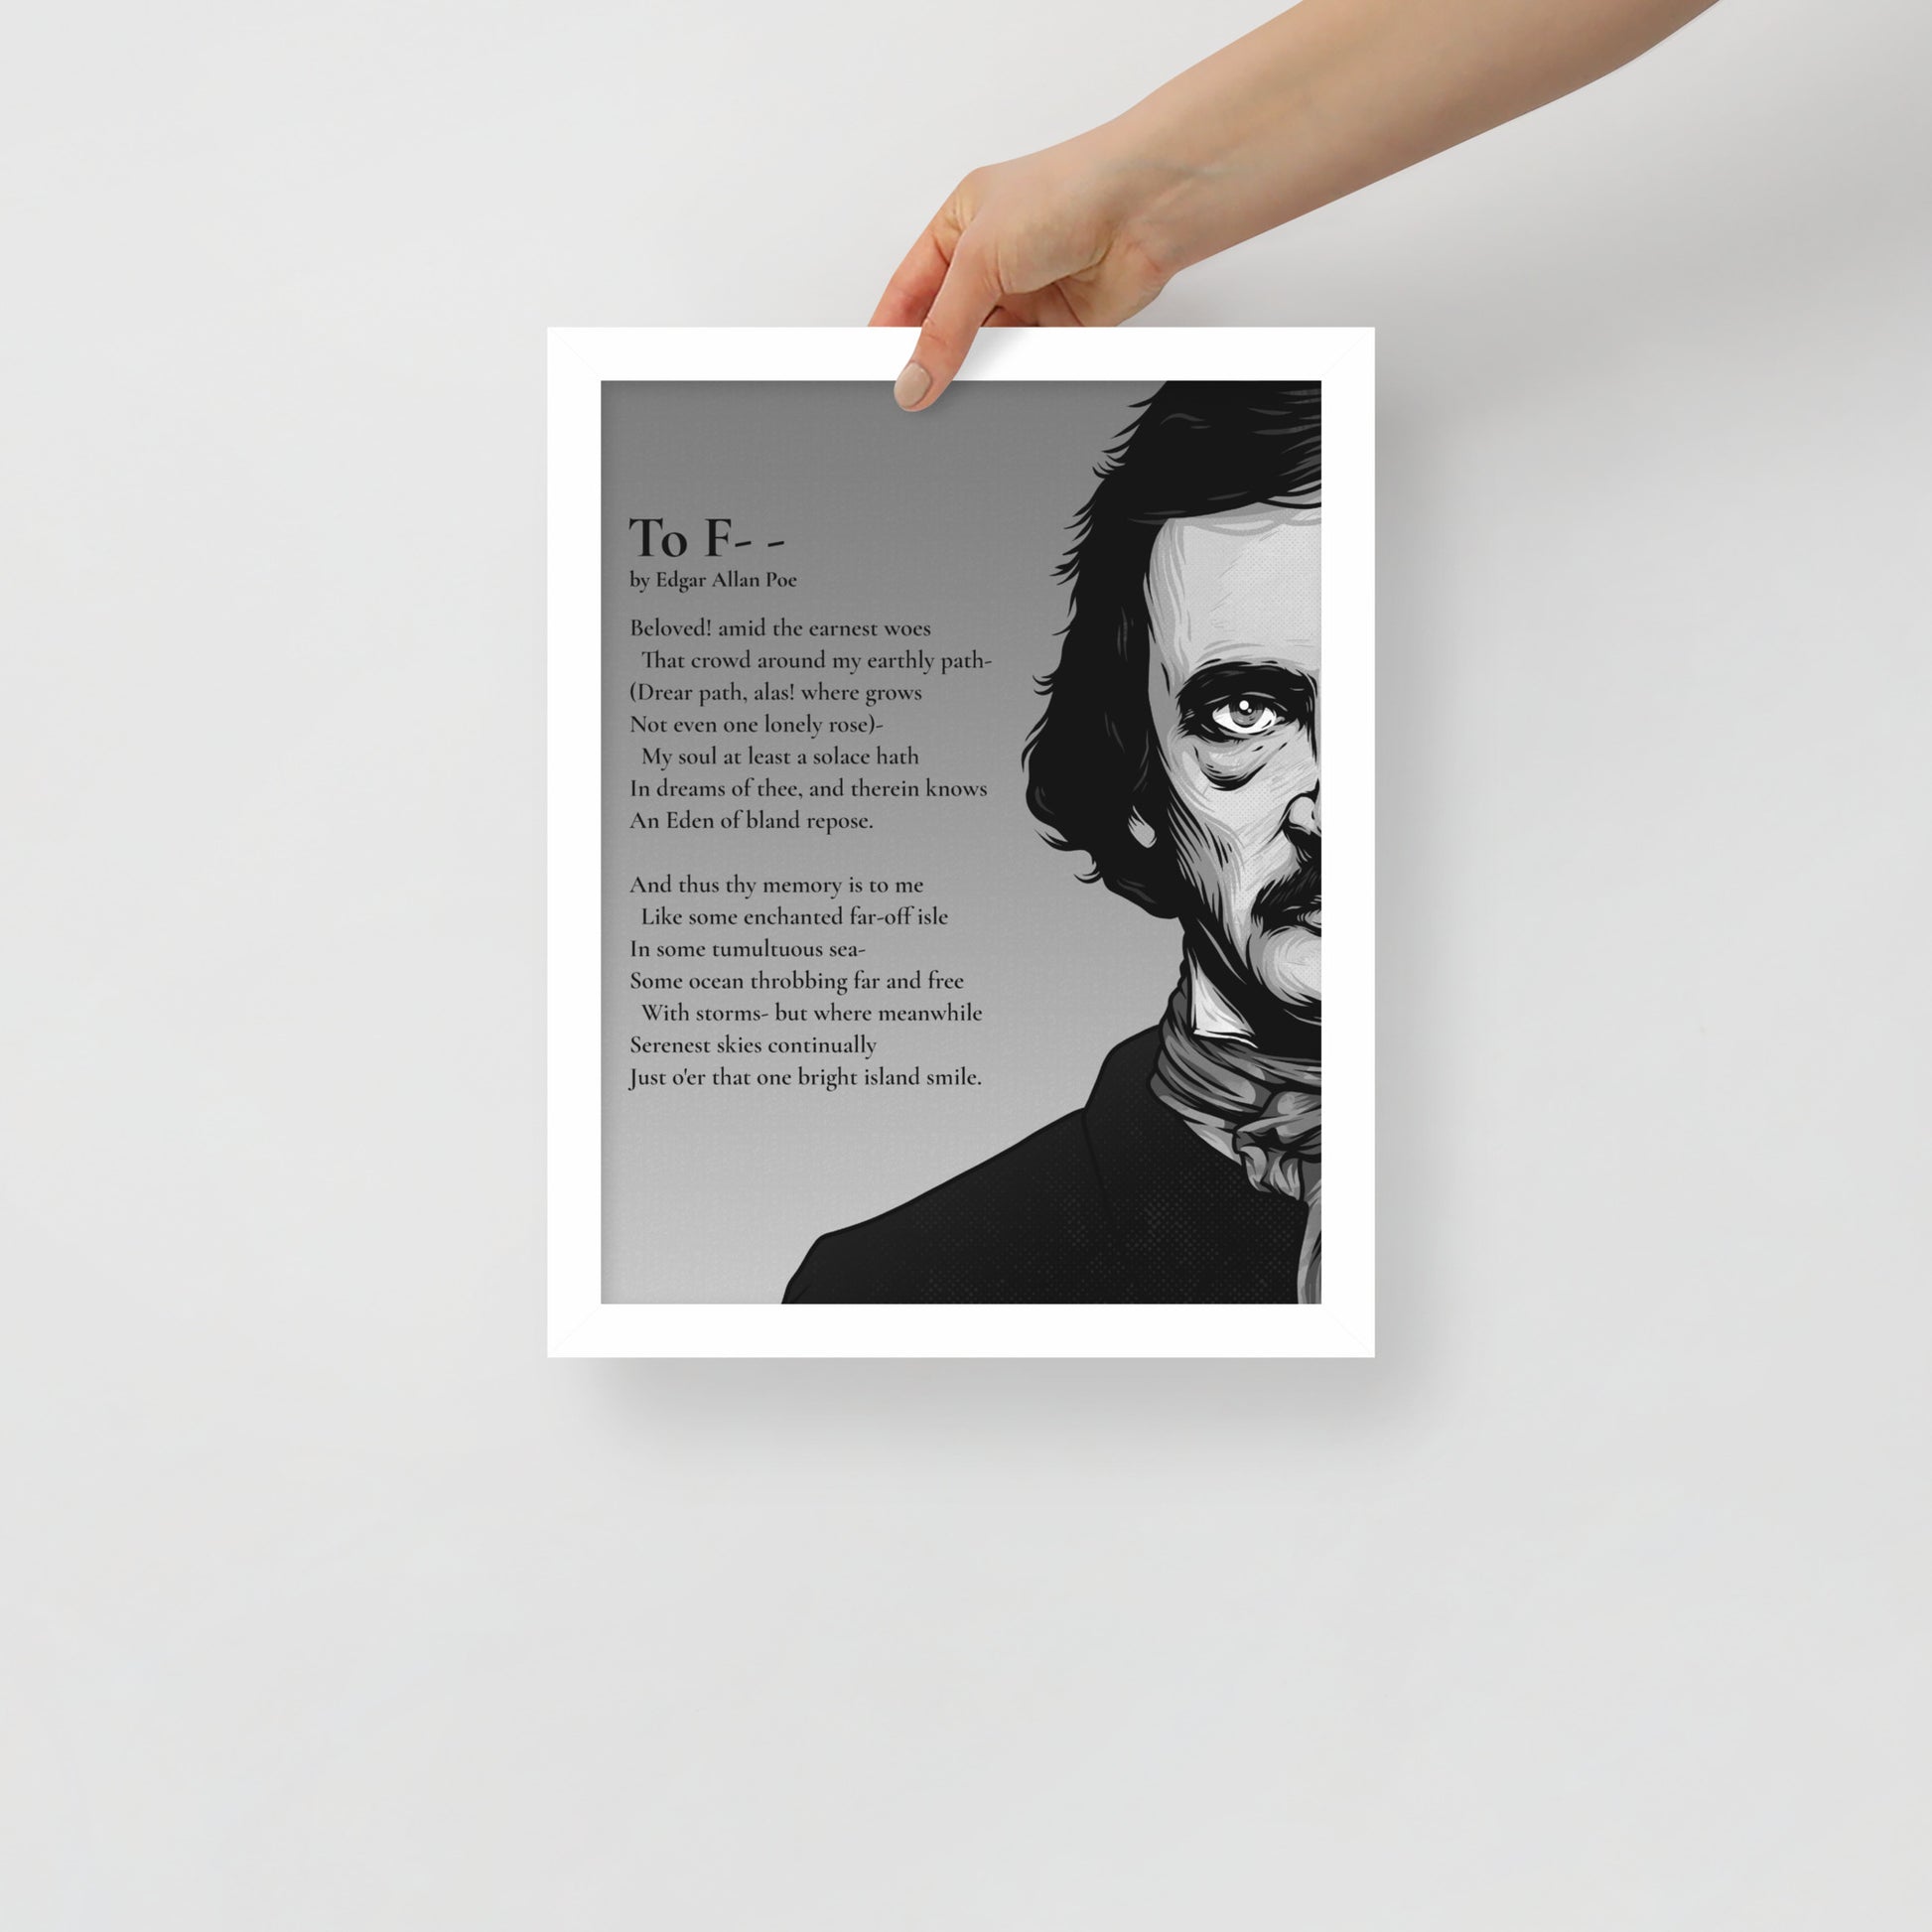 Edgar Allan Poe's 'To F--' Framed Matted Poster - 11 x 14 White Frame